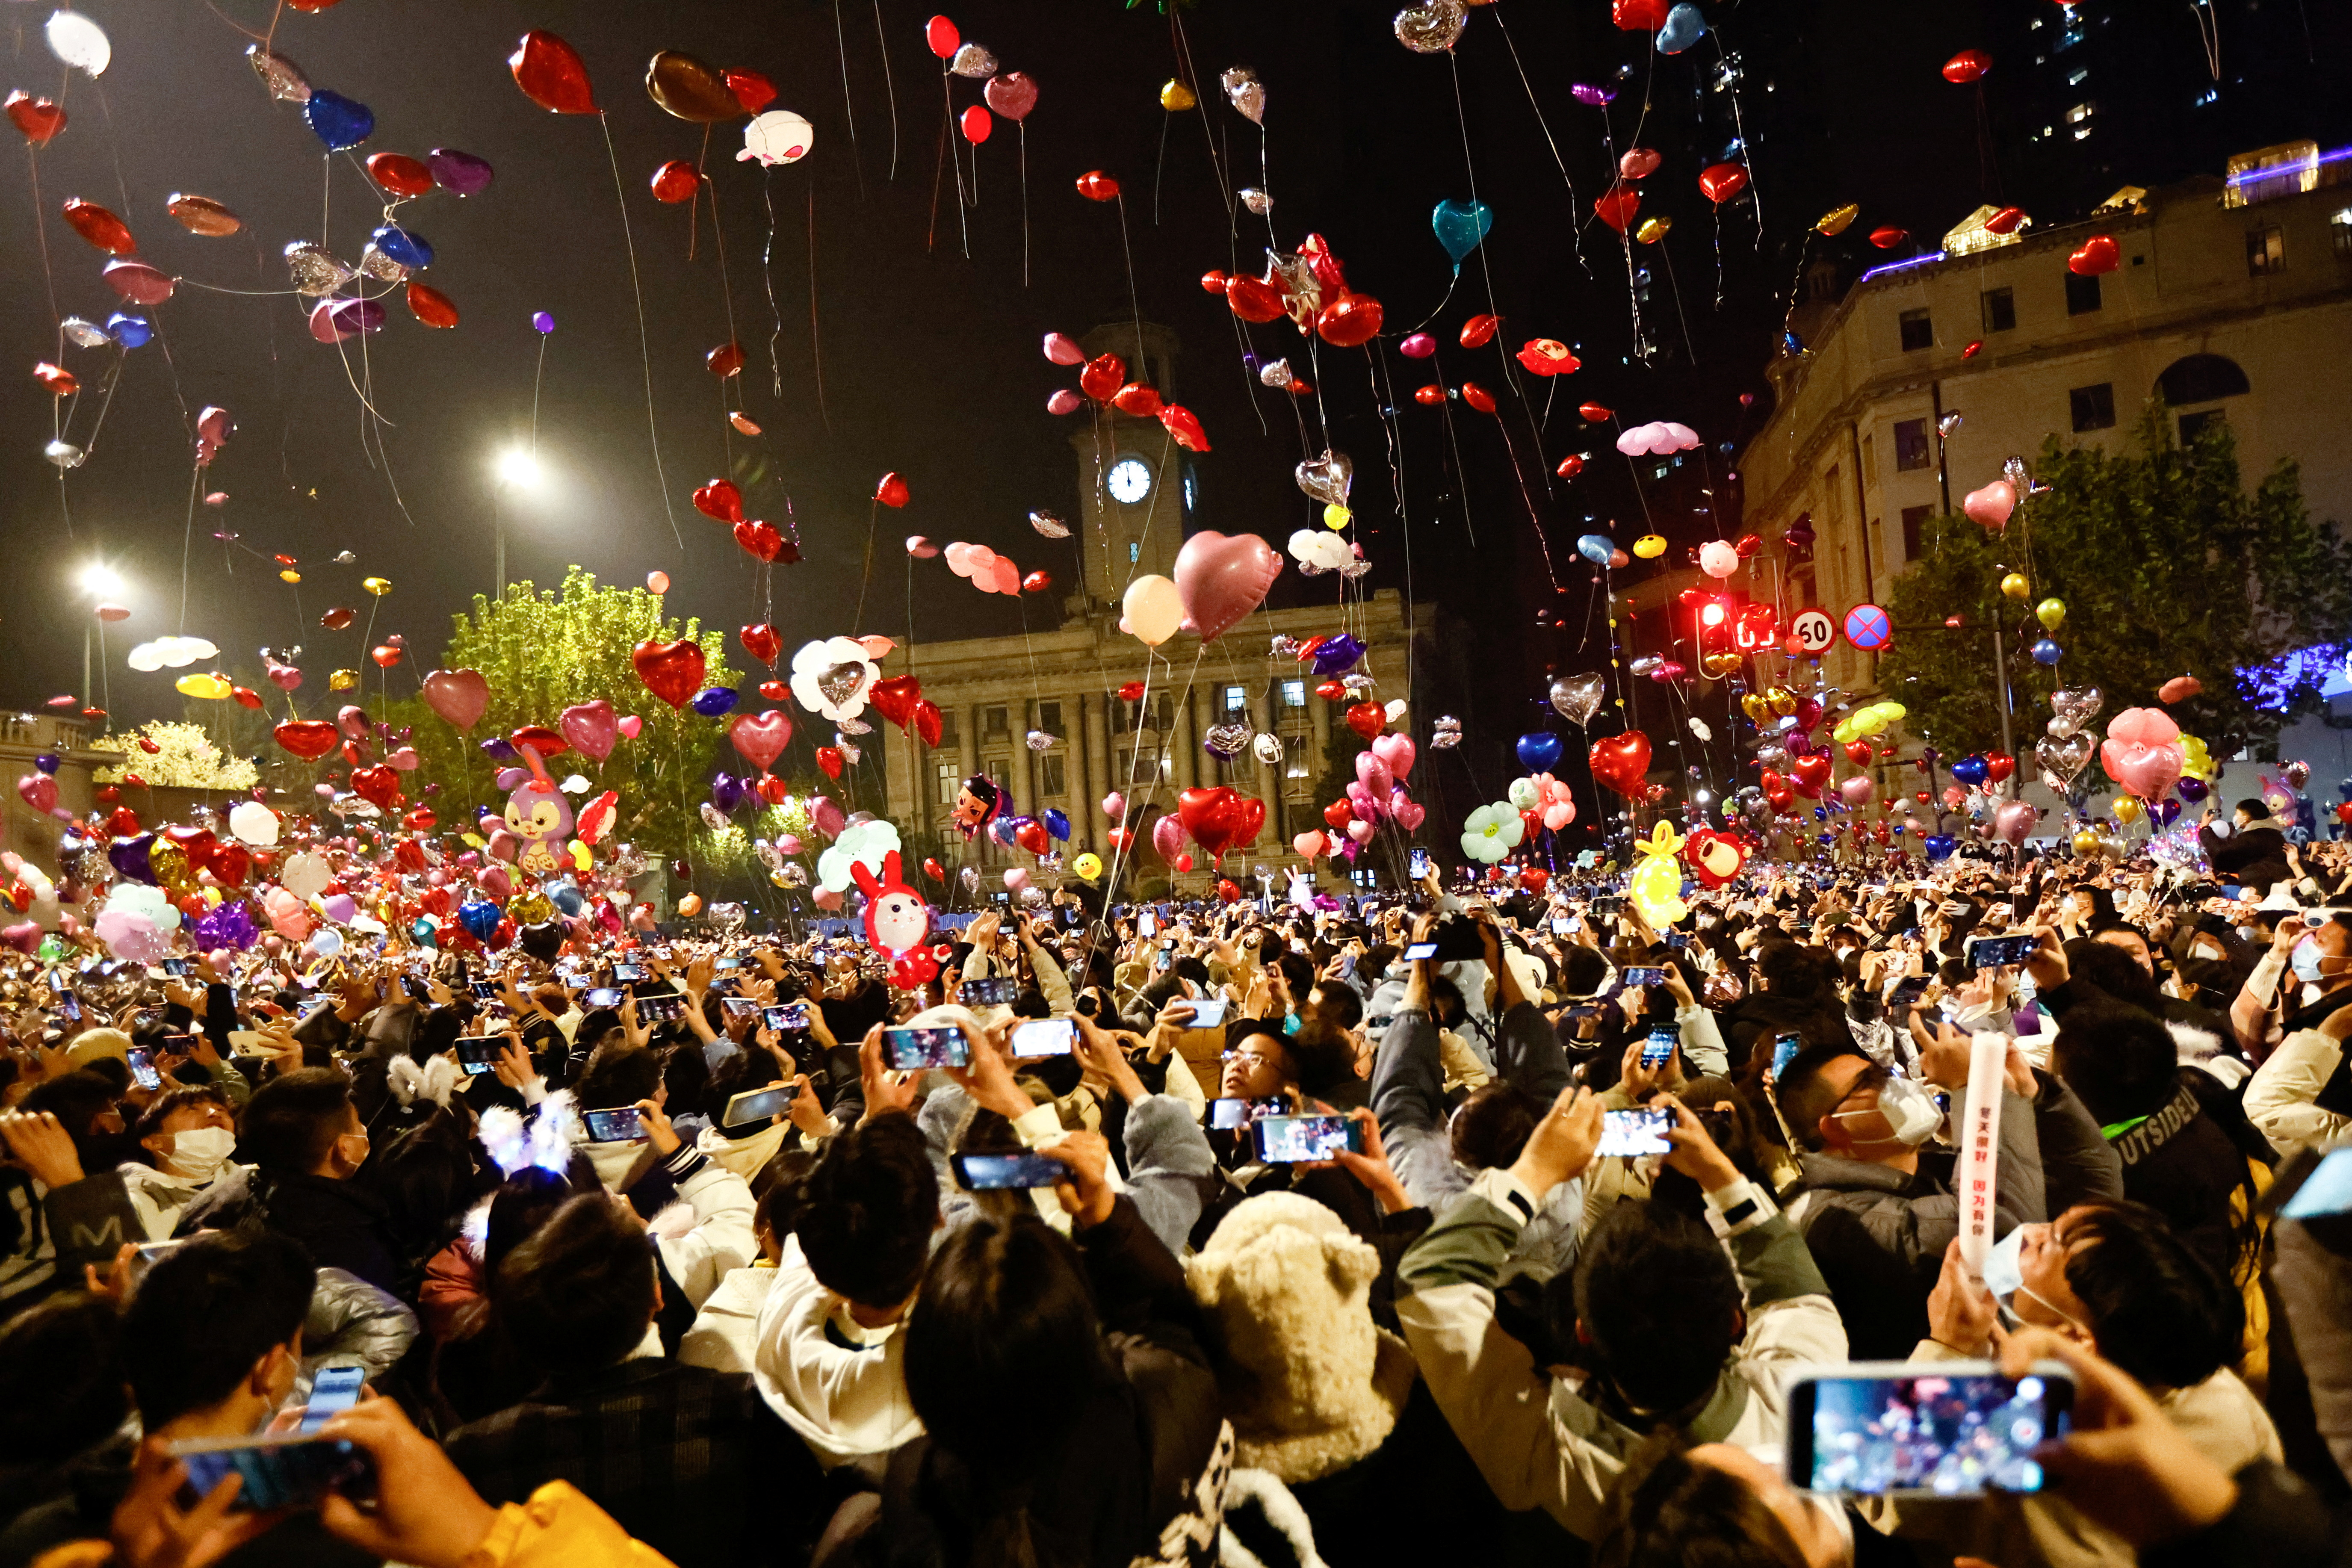 Los fetsejos en Wuhan, China, incluyeron miles de coloridos globos que fueron soltados al cielo (REUTERS)